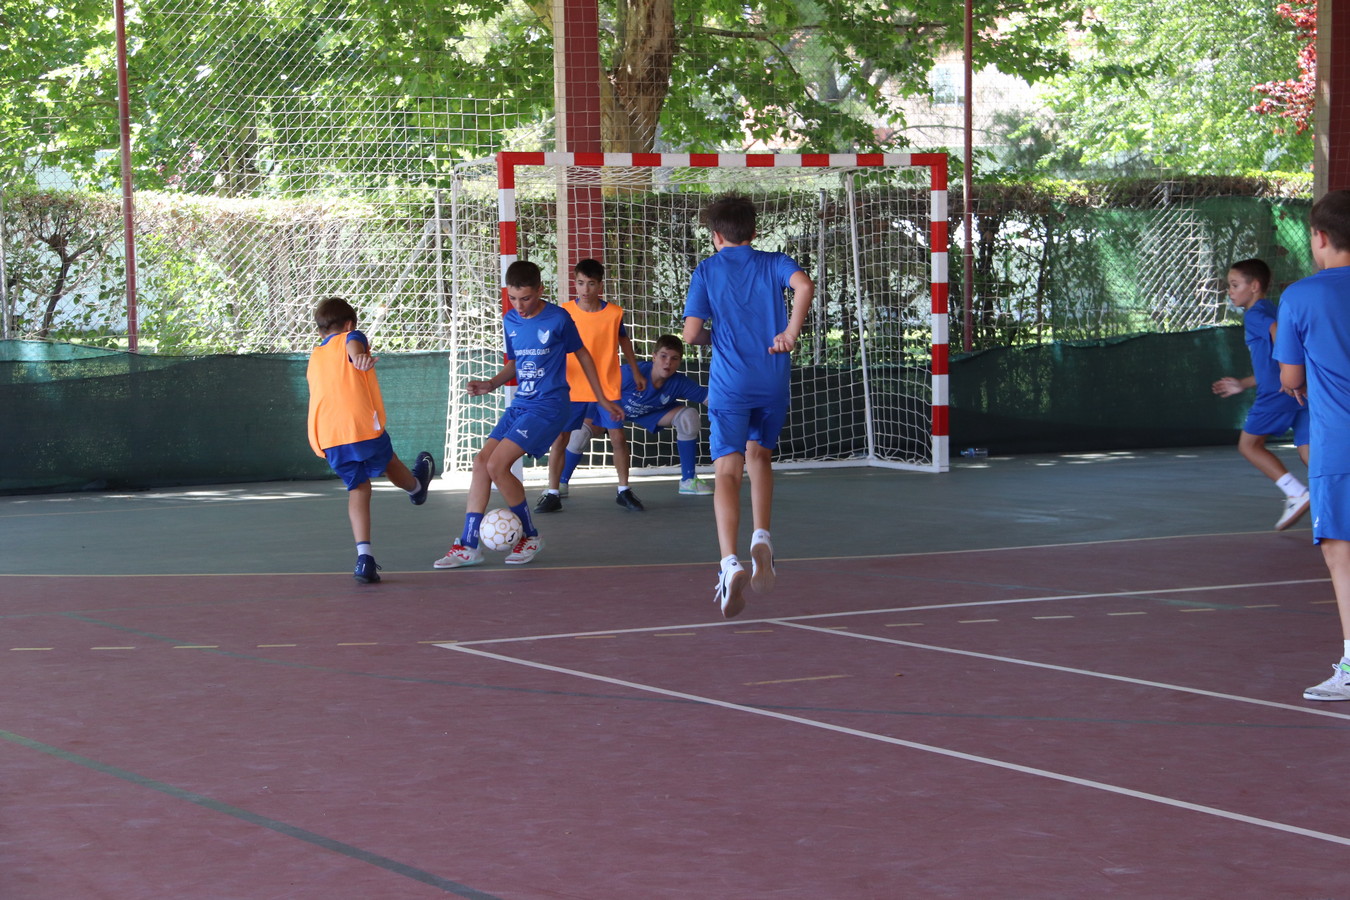 Liga Infantil de Fútbol Sala para verano 2016